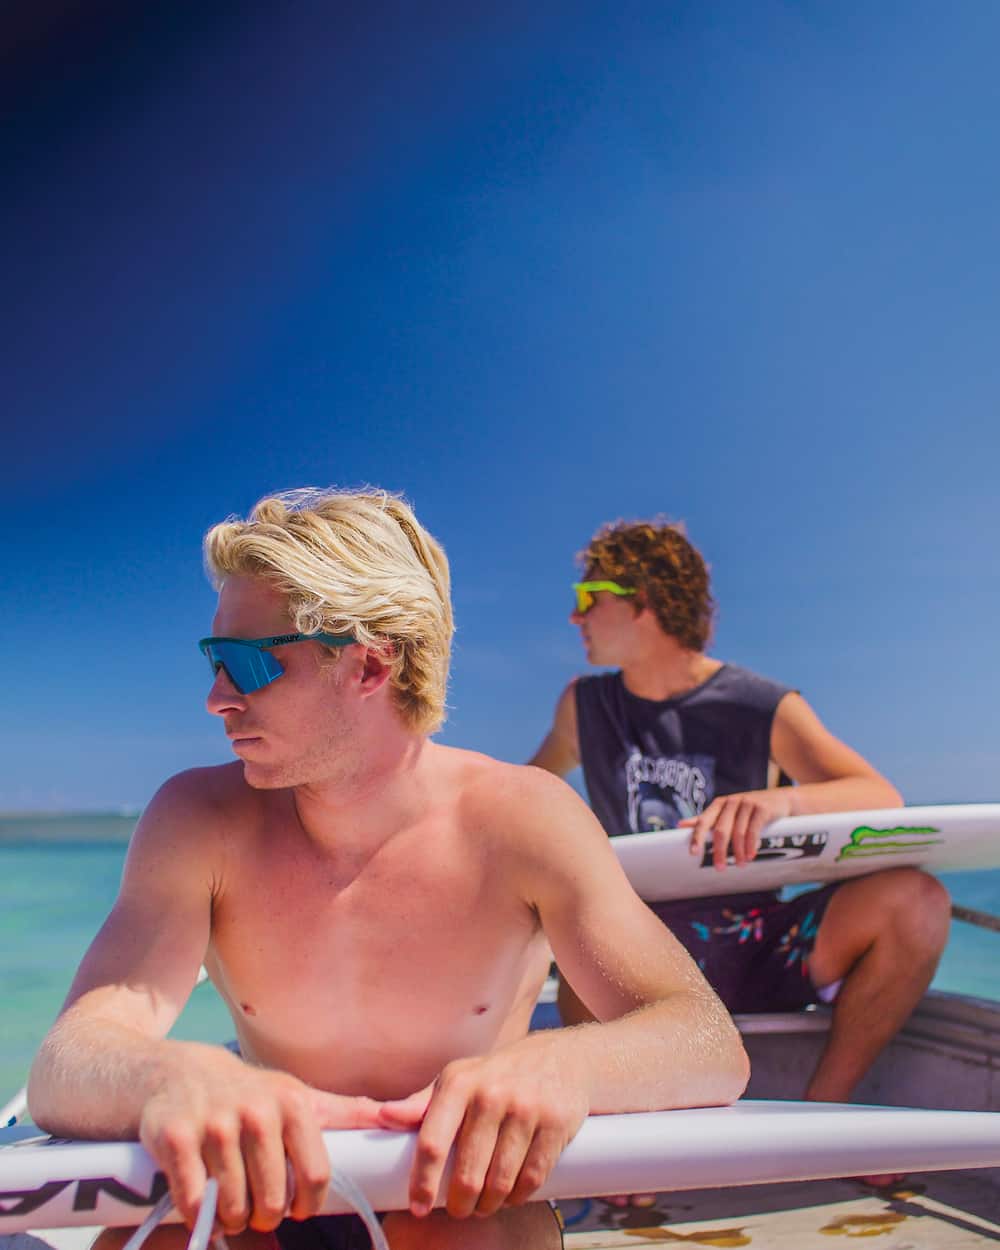 Two men wearing Oakley sunglasses on surfboards